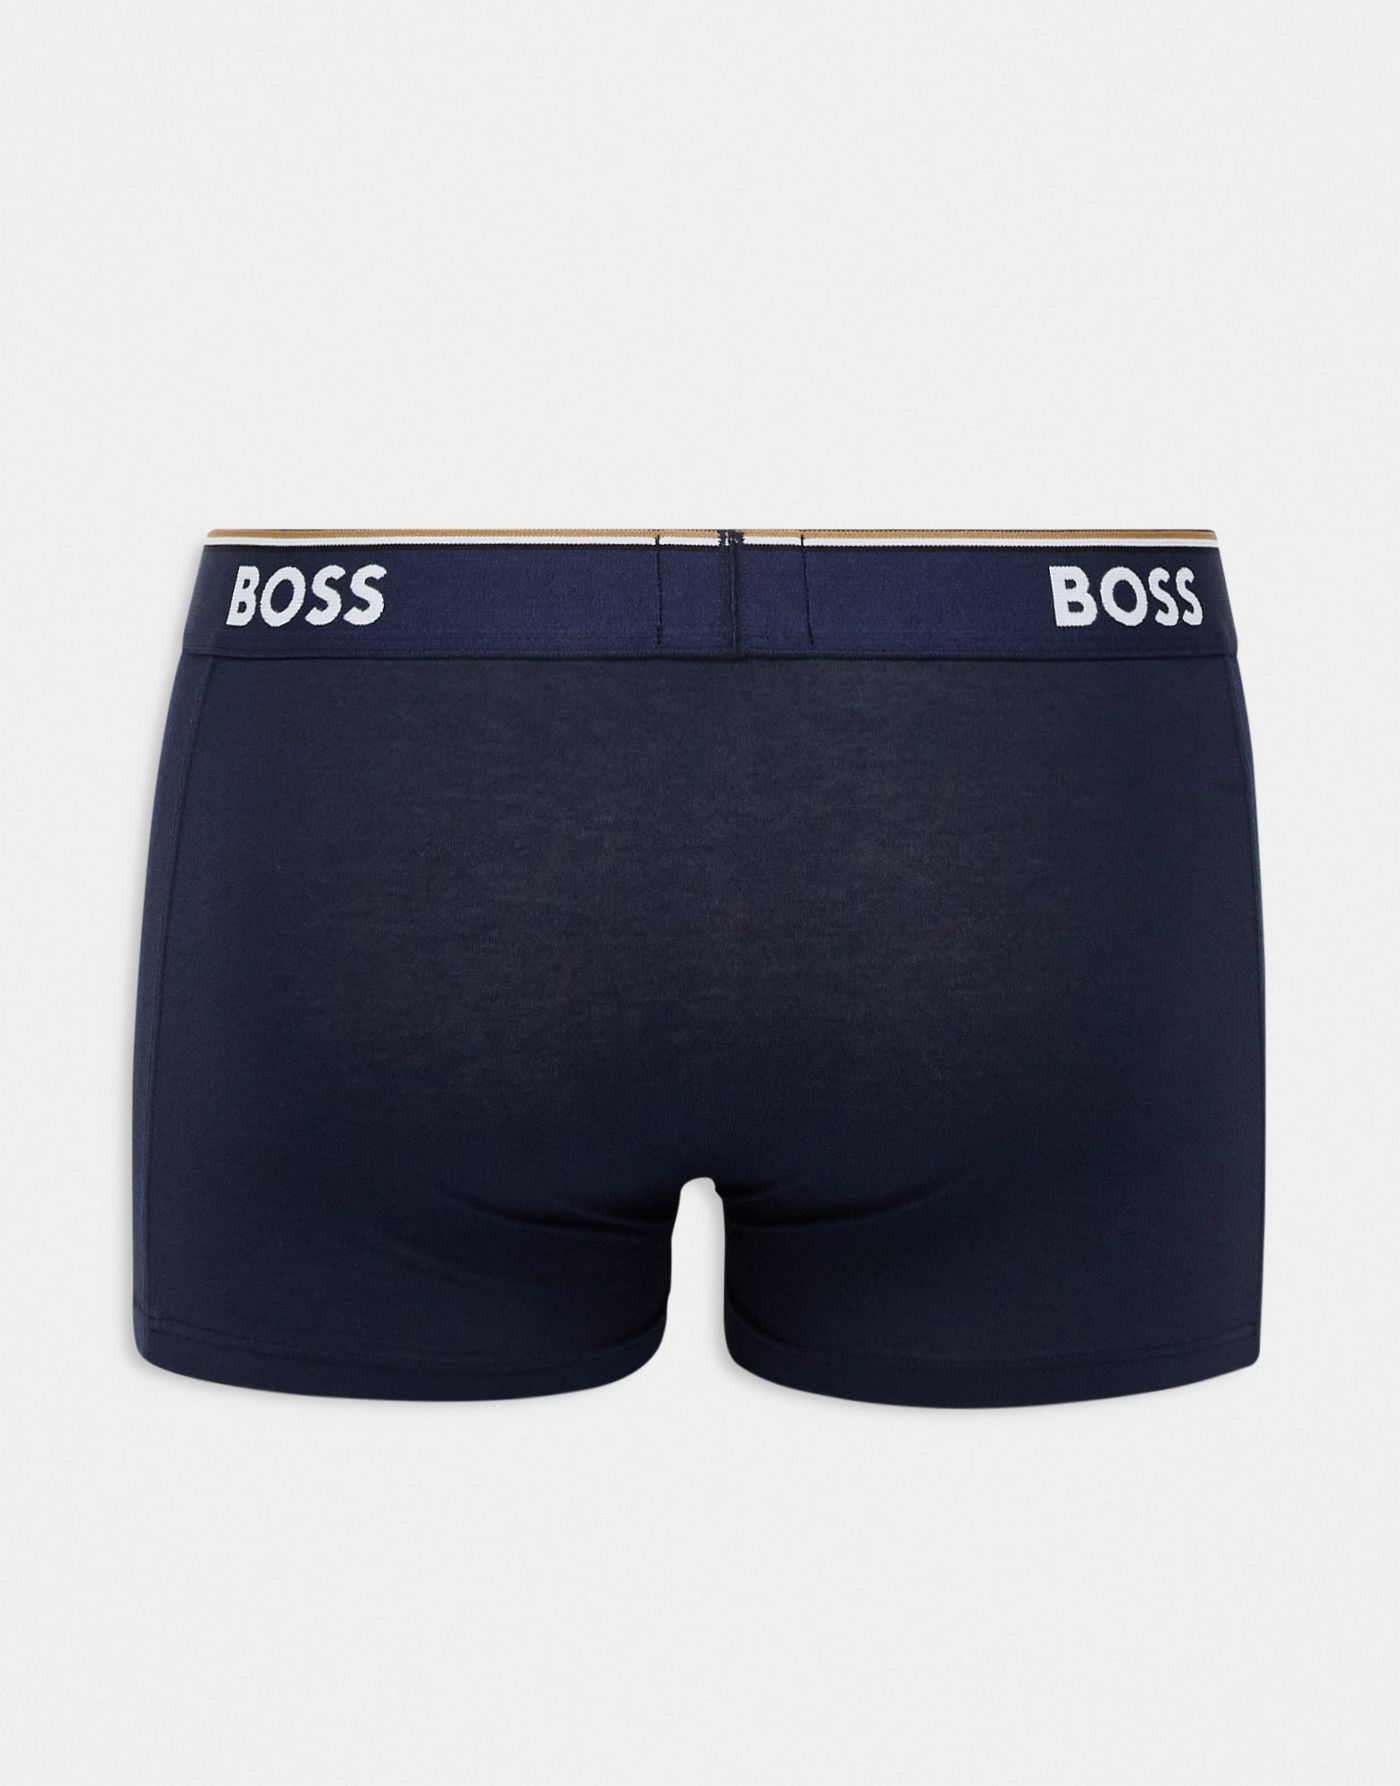 Boss Bodywear power 3 pack trunks in black, navy and logo design